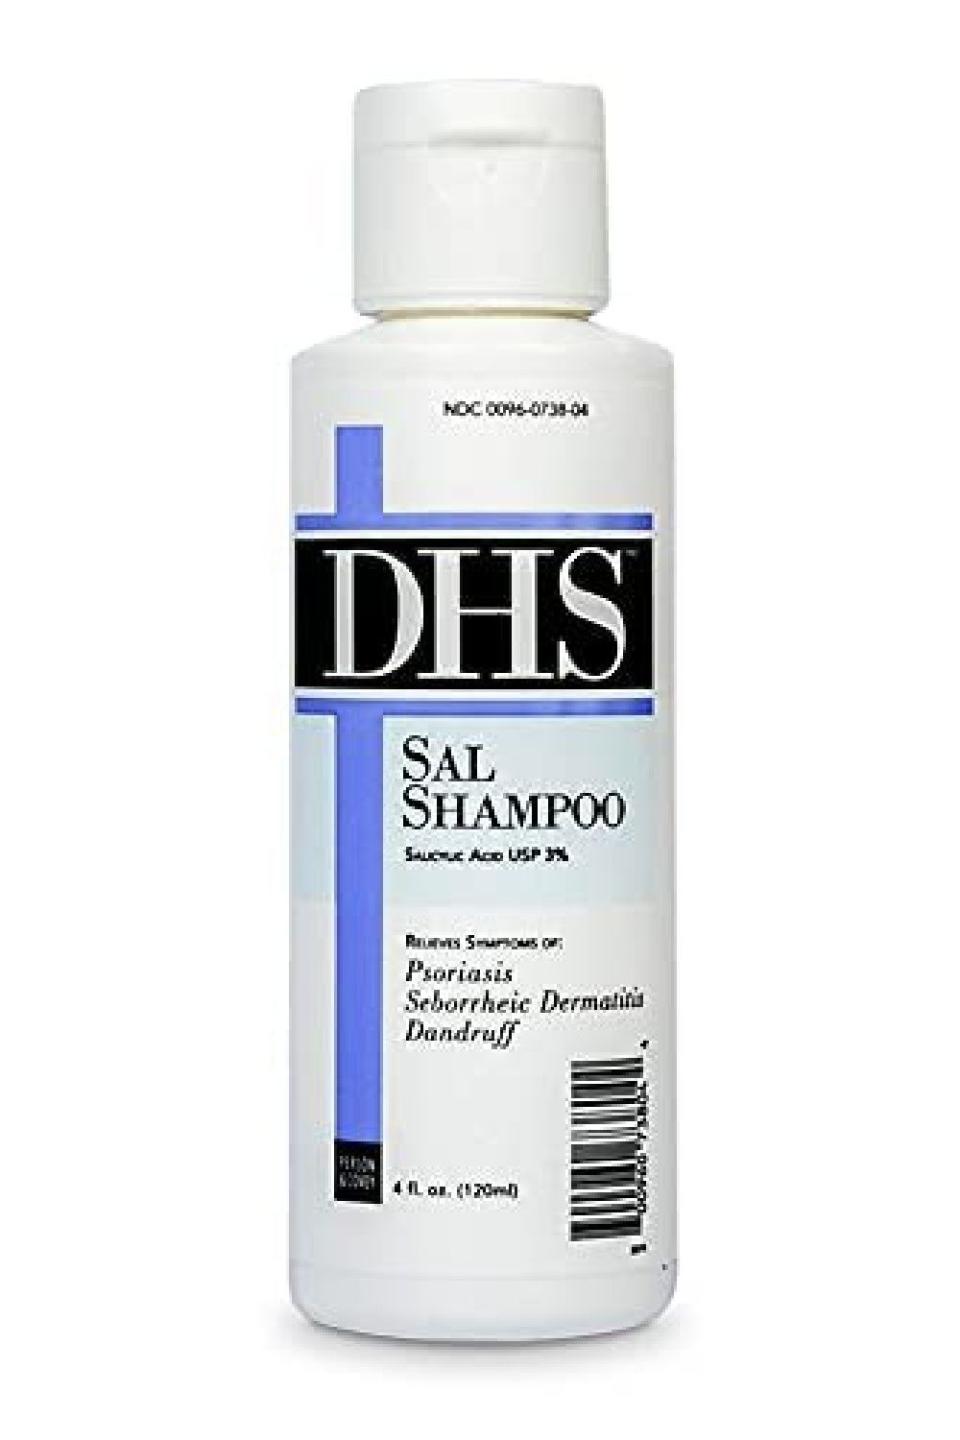 5) DHS SAL Shampoo